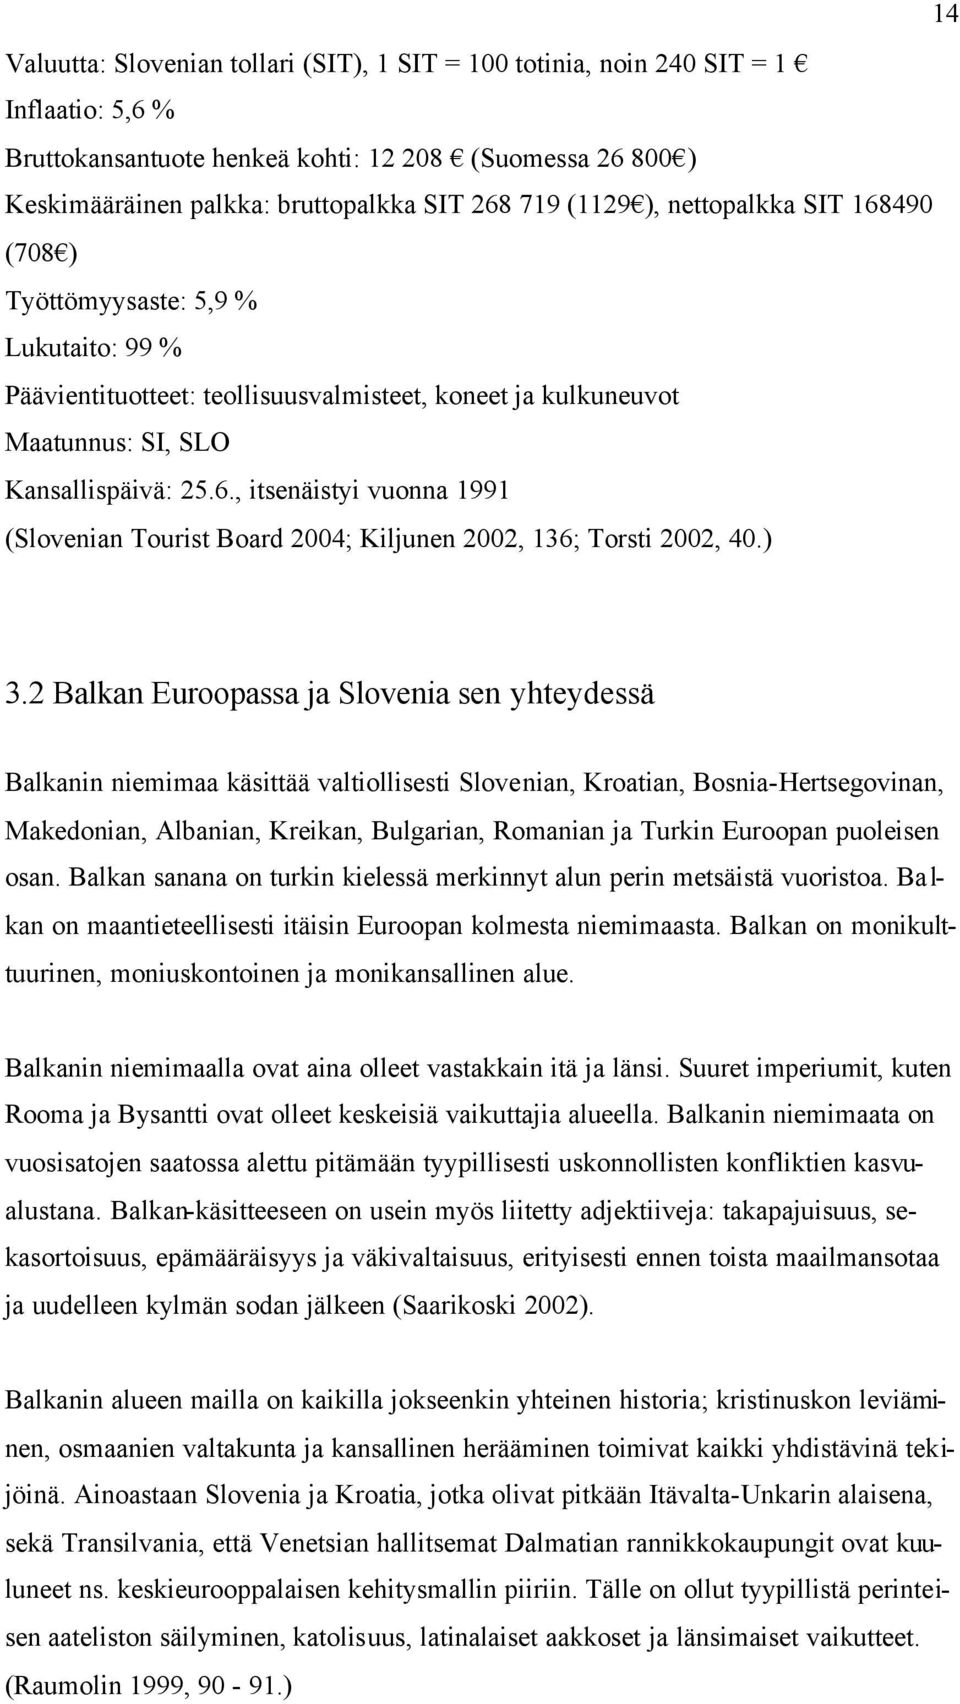 ) 3.2 Balkan Euroopassa ja Slovenia sen yhteydessä Balkanin niemimaa käsittää valtiollisesti Slovenian, Kroatian, Bosnia-Hertsegovinan, Makedonian, Albanian, Kreikan, Bulgarian, Romanian ja Turkin